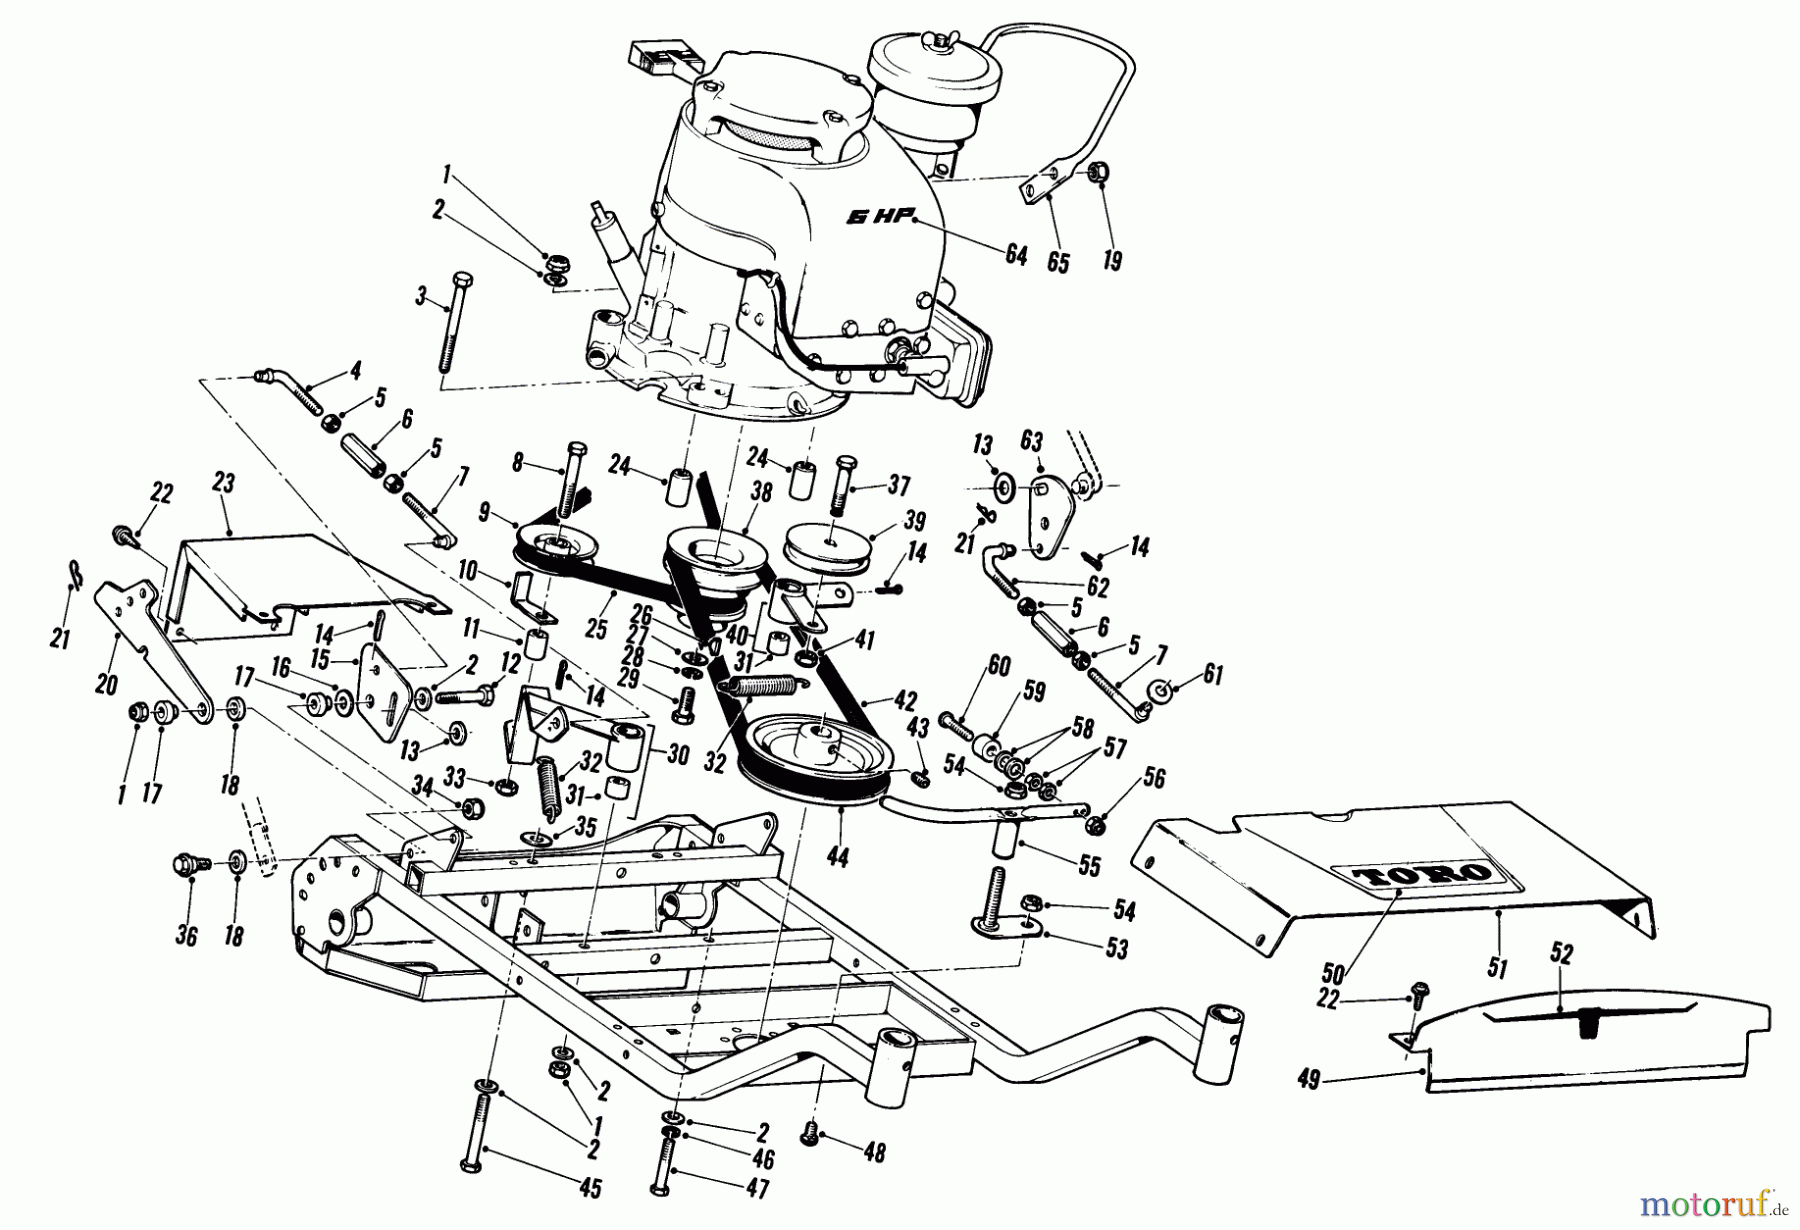  Toro Neu Mowers, Wide-Area Walk-Behind 23301 - Toro Lawnmower, 1969 (9000001-9999999) 25